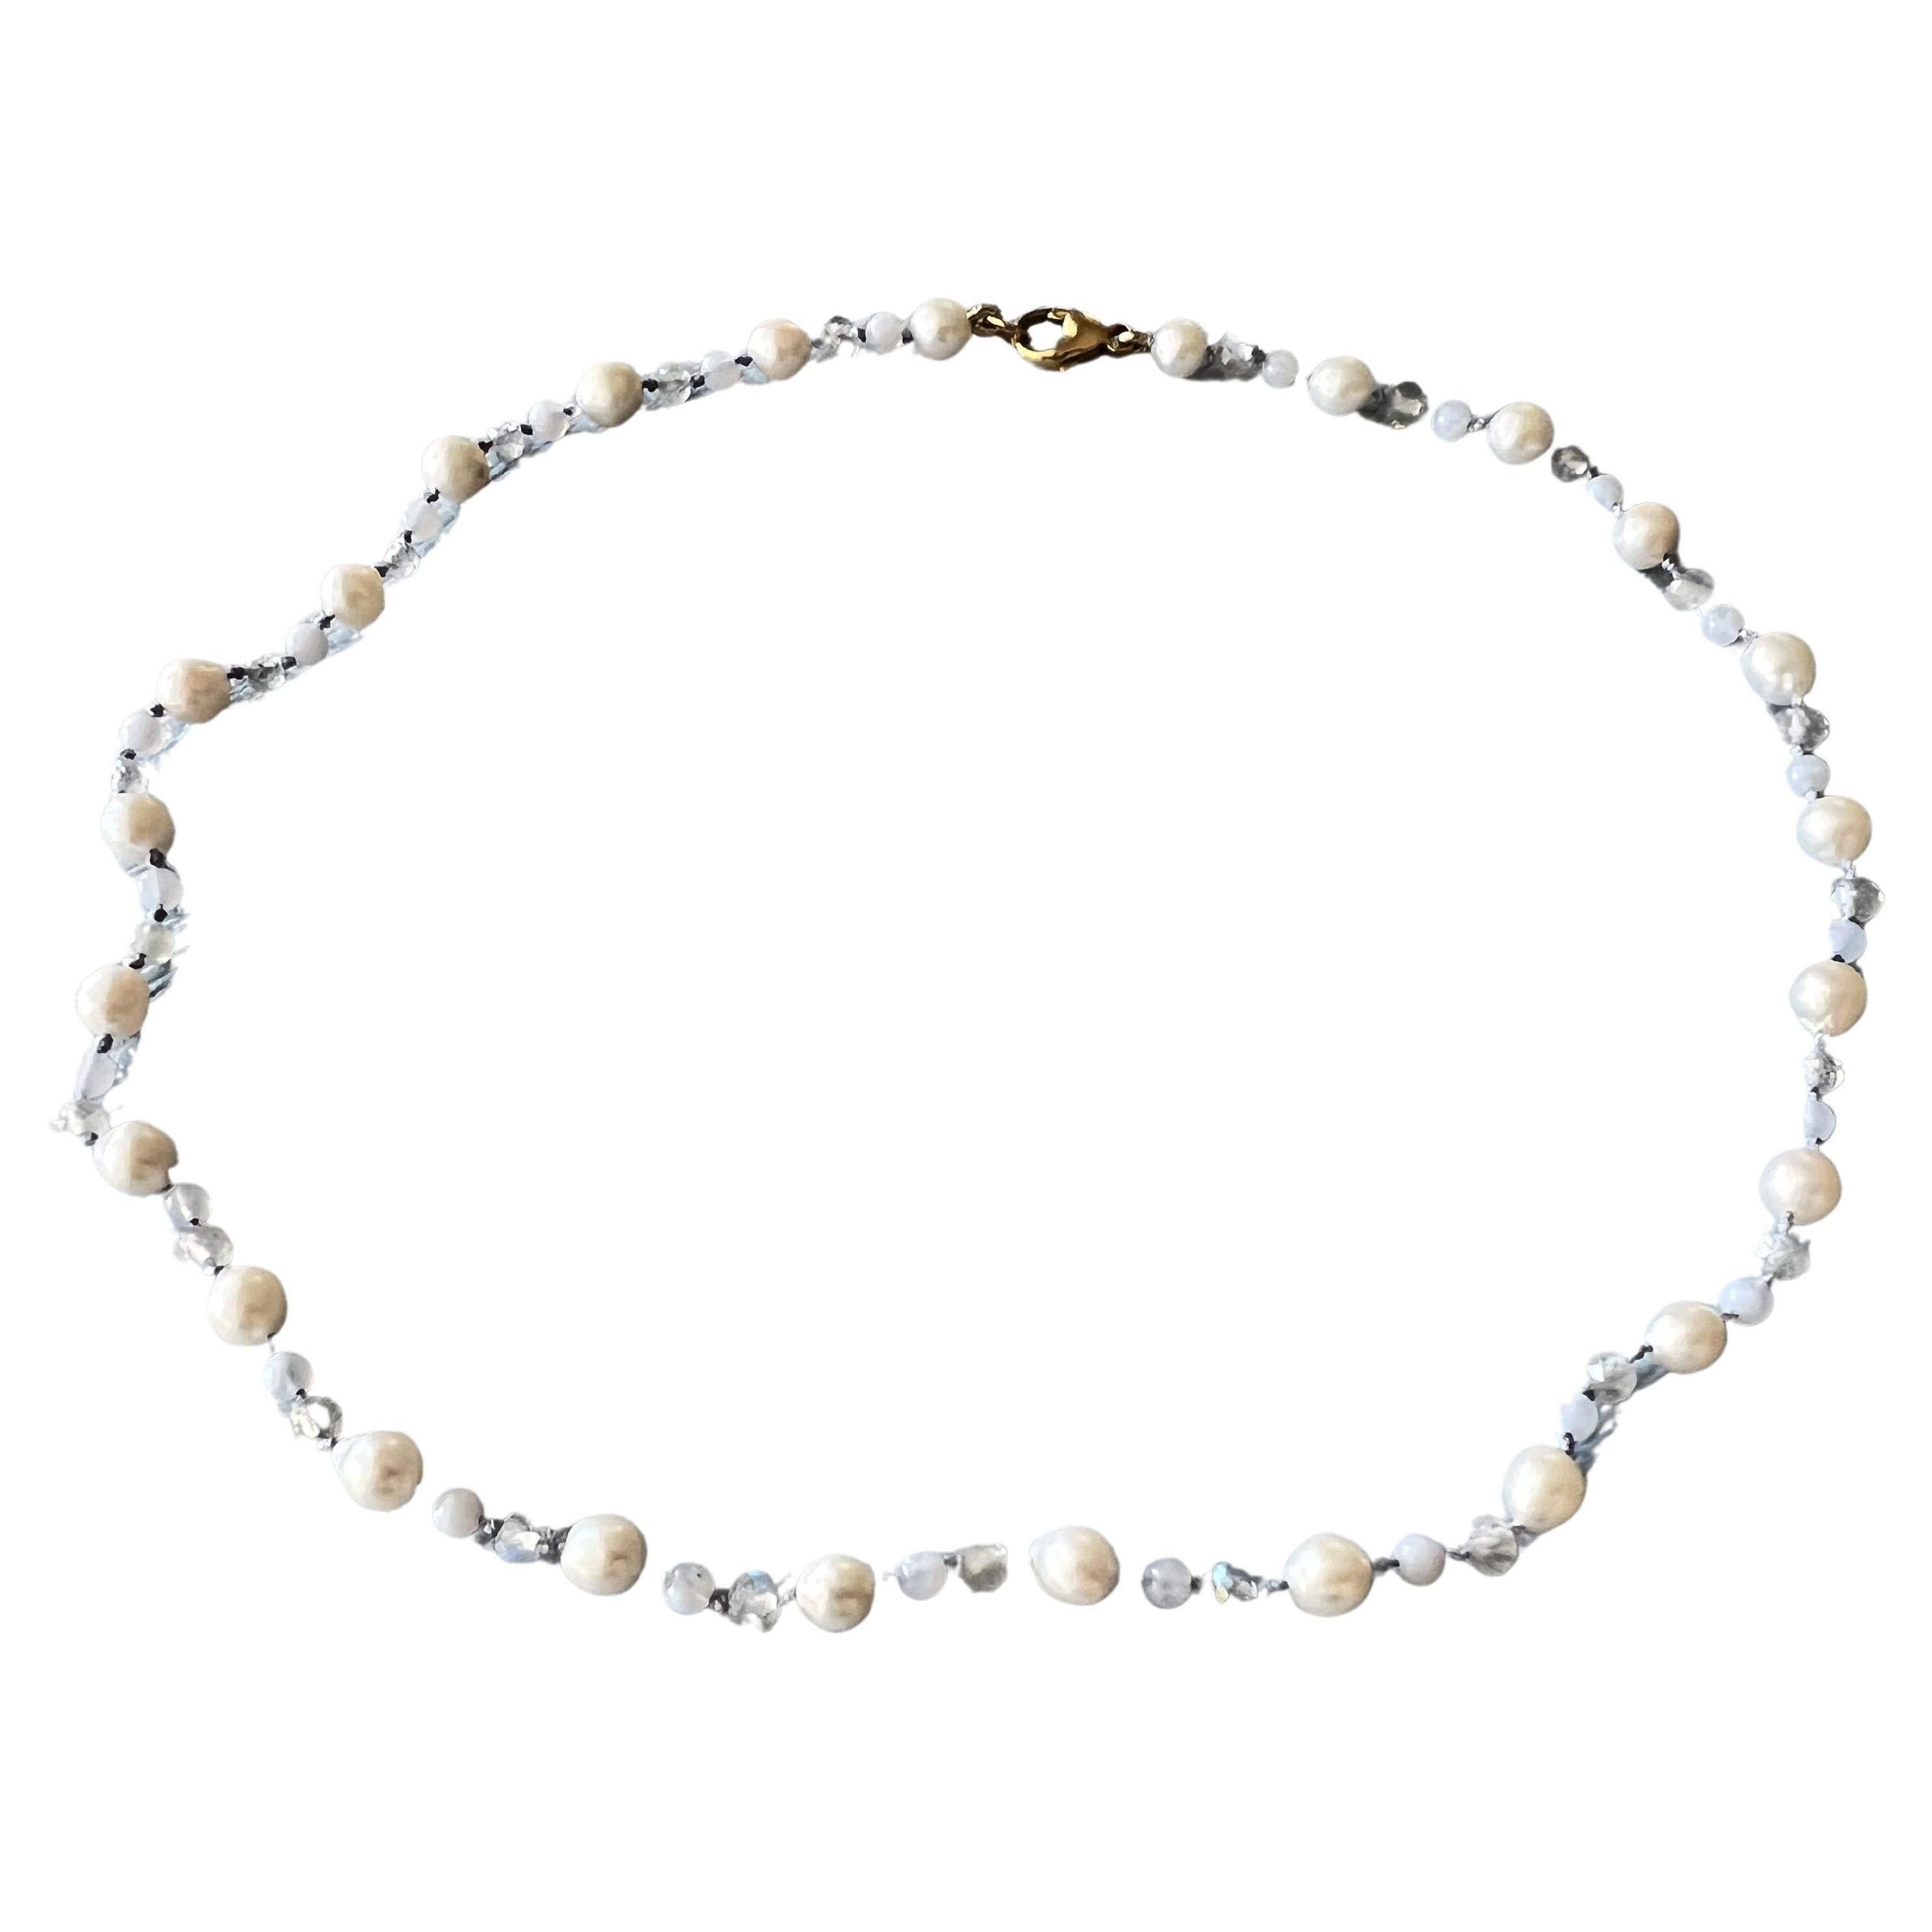 Weiße Perle, Labradorit und blauer Spitzenachat Choker-Halskette mit goldfarbenem Verschluss

Designer: J DAUPHIN

Länge: Halskette 16